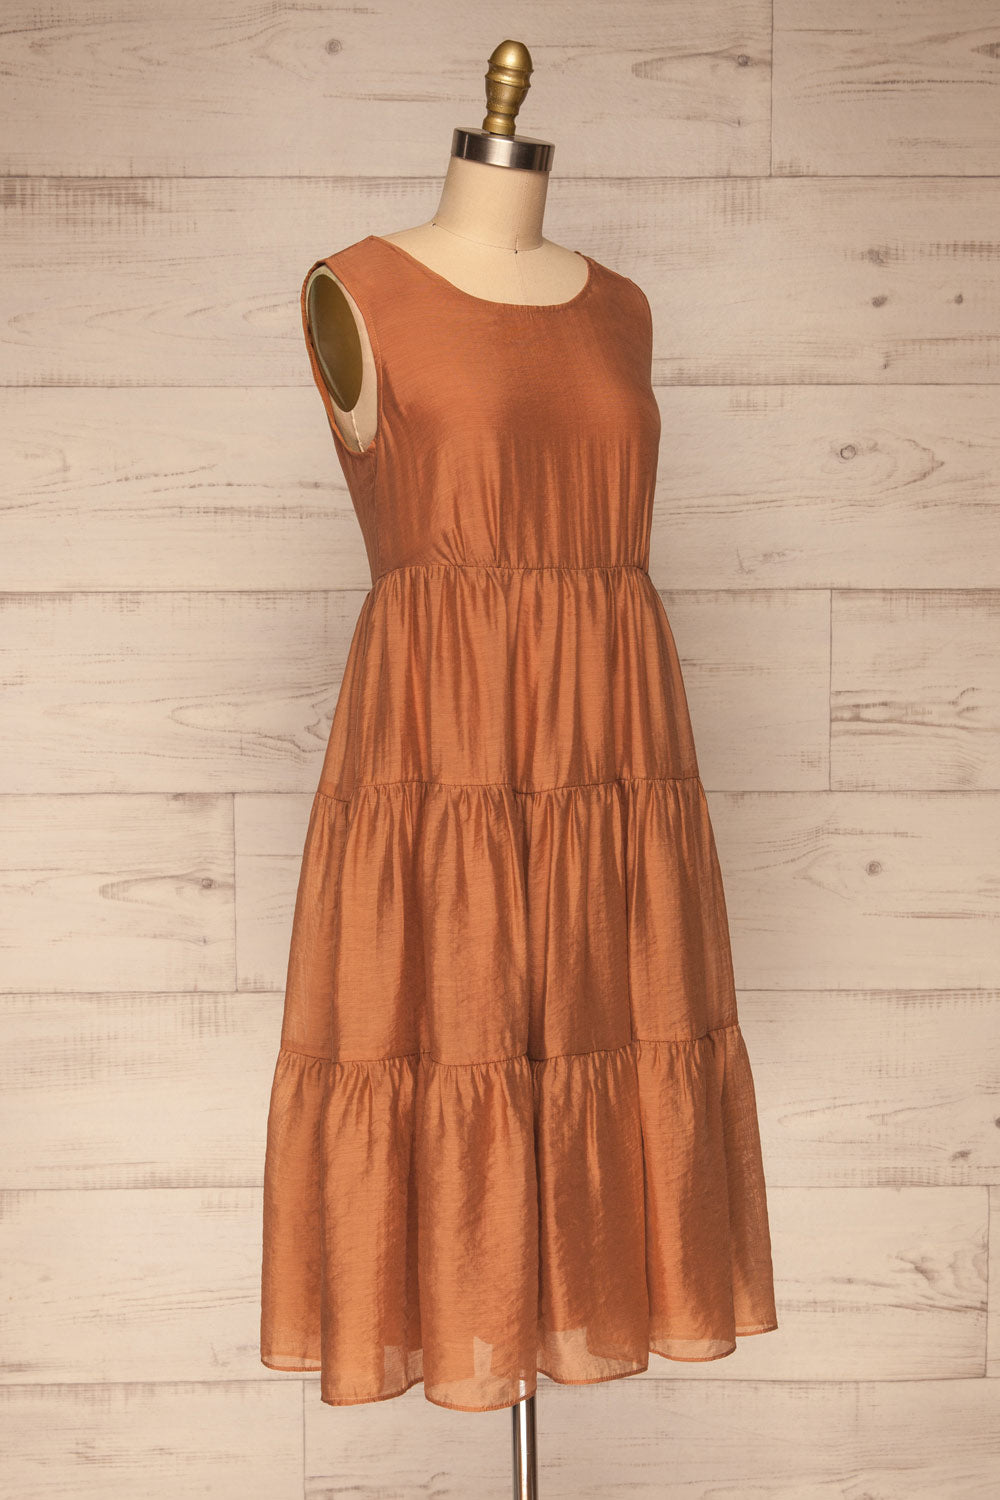 Duleek Orange A-Line Midi Dress | La petite garçonne side view